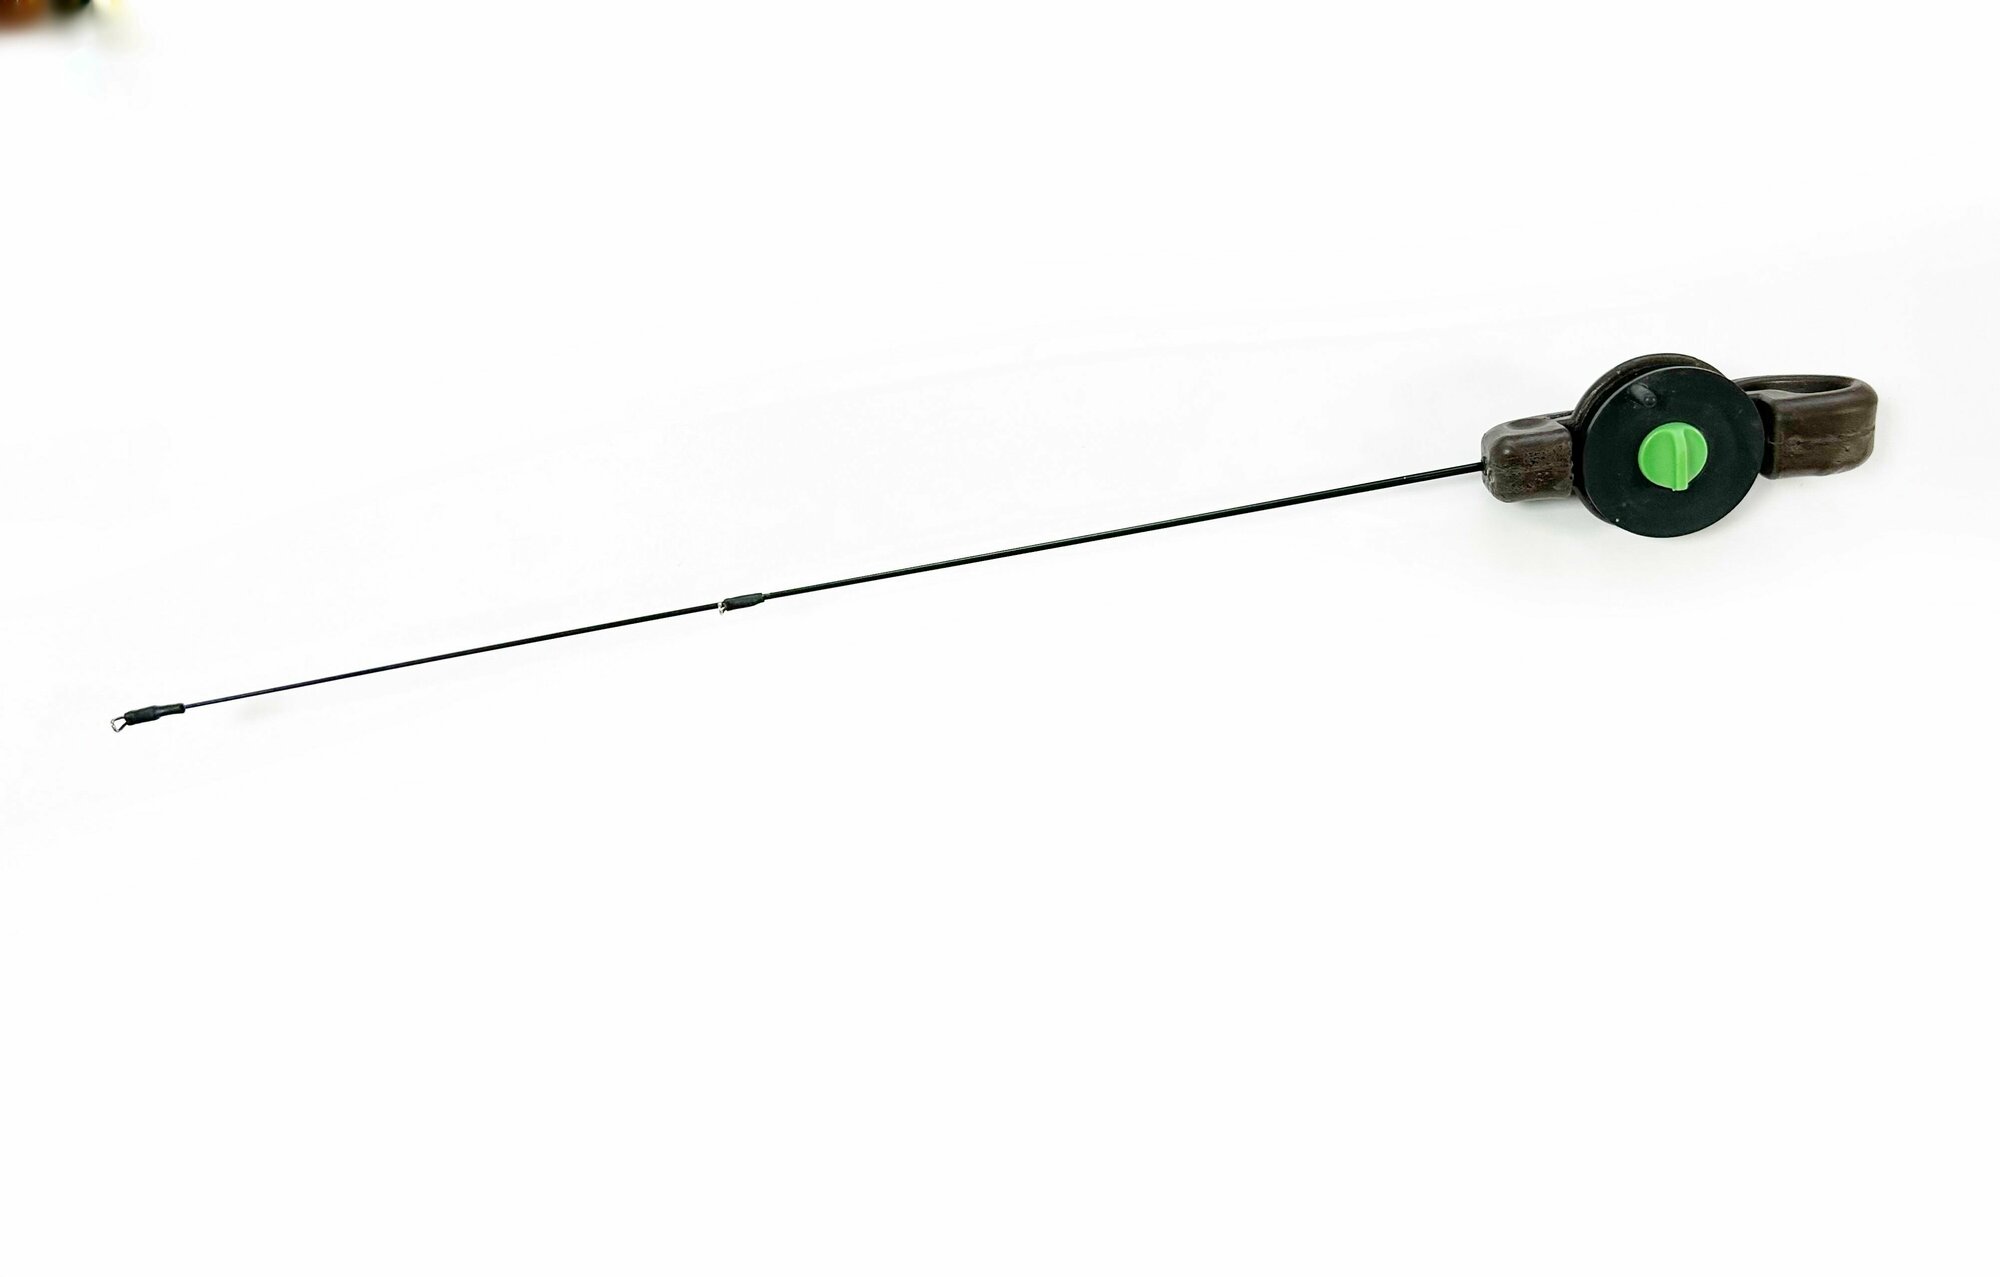 Удочка зимняя для ловли форели на резину и раттлины с катушкой длина 43 см тест до 15 гр, цвет Коричневый